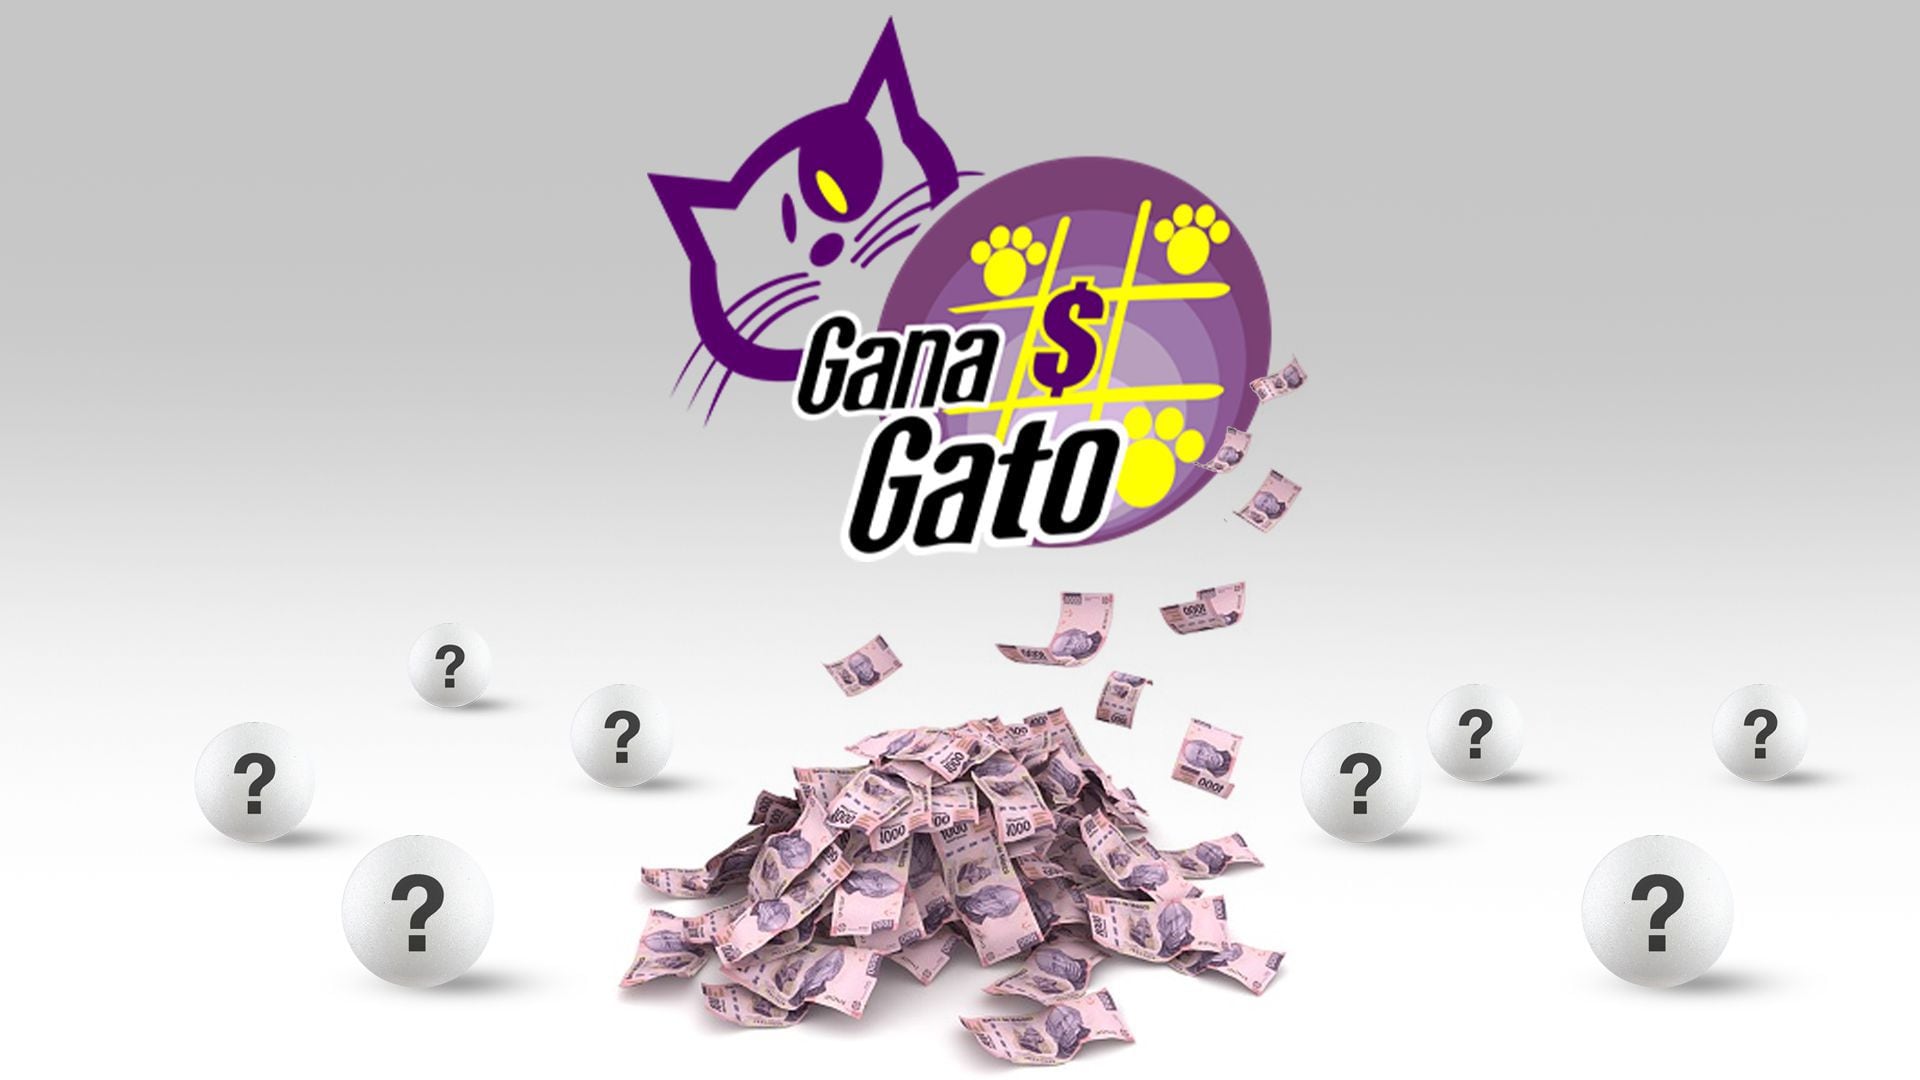 En el sorteo de hoy, Gana Gato entregó $341,956.44 pesos en premios (Infobae/Jovani Pérez)